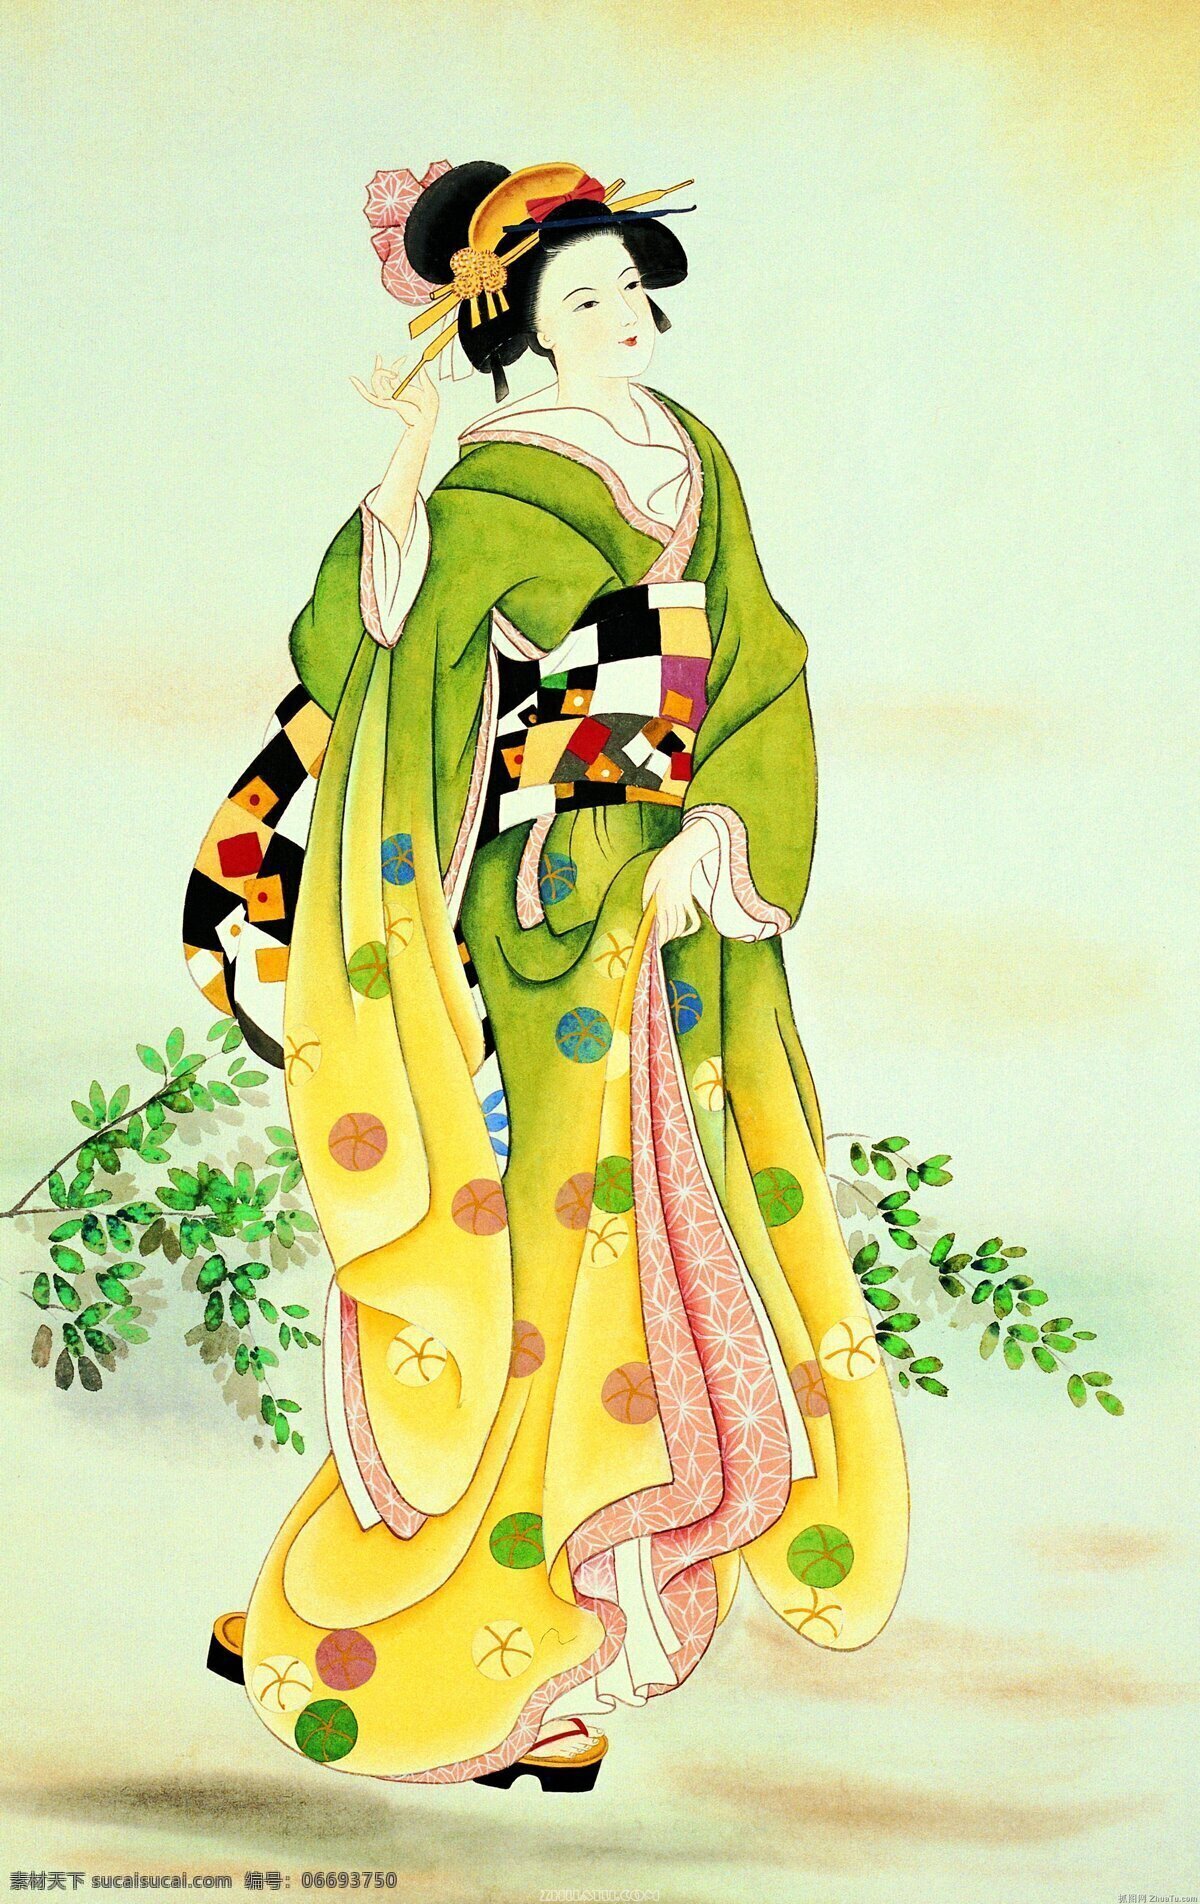 日本 艺妓 美女 图 日式风格 浮世绘 和风 江户时代 华丽服饰 美女图